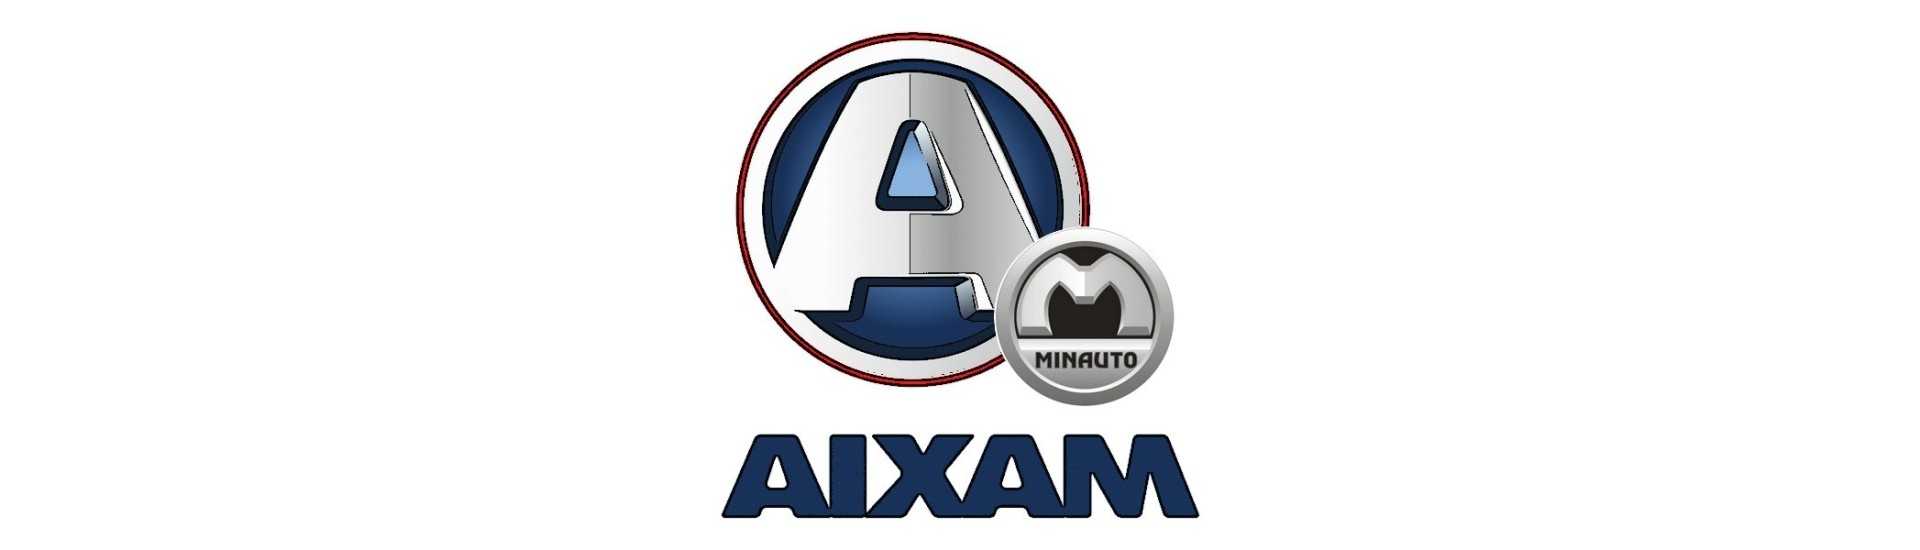 Höchstpreis für Auto ohne Lizenz Aixam Minauto